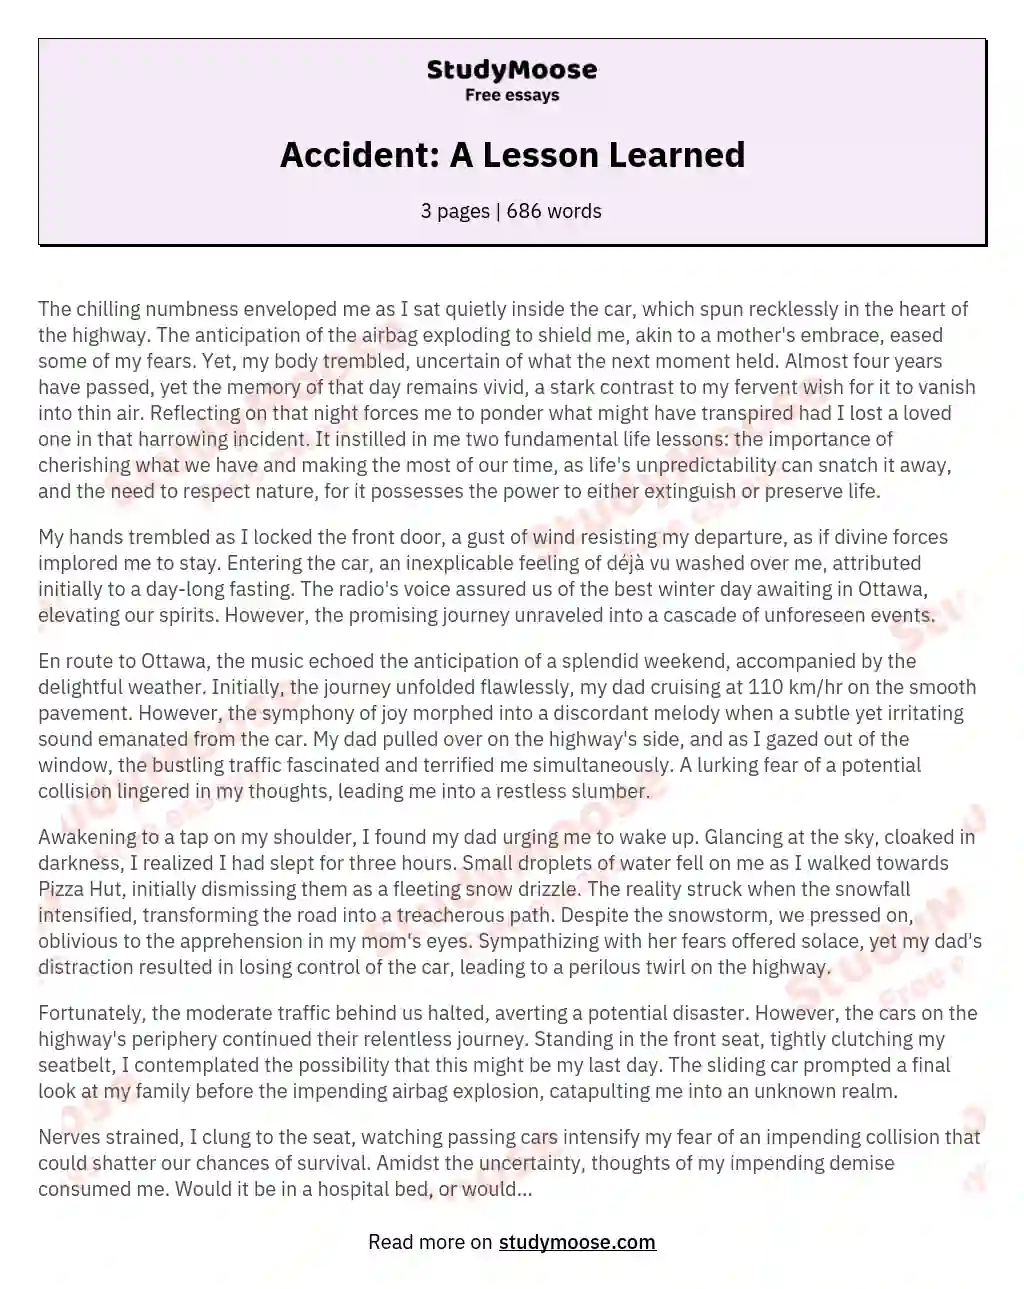 descriptive essay about an accident scene